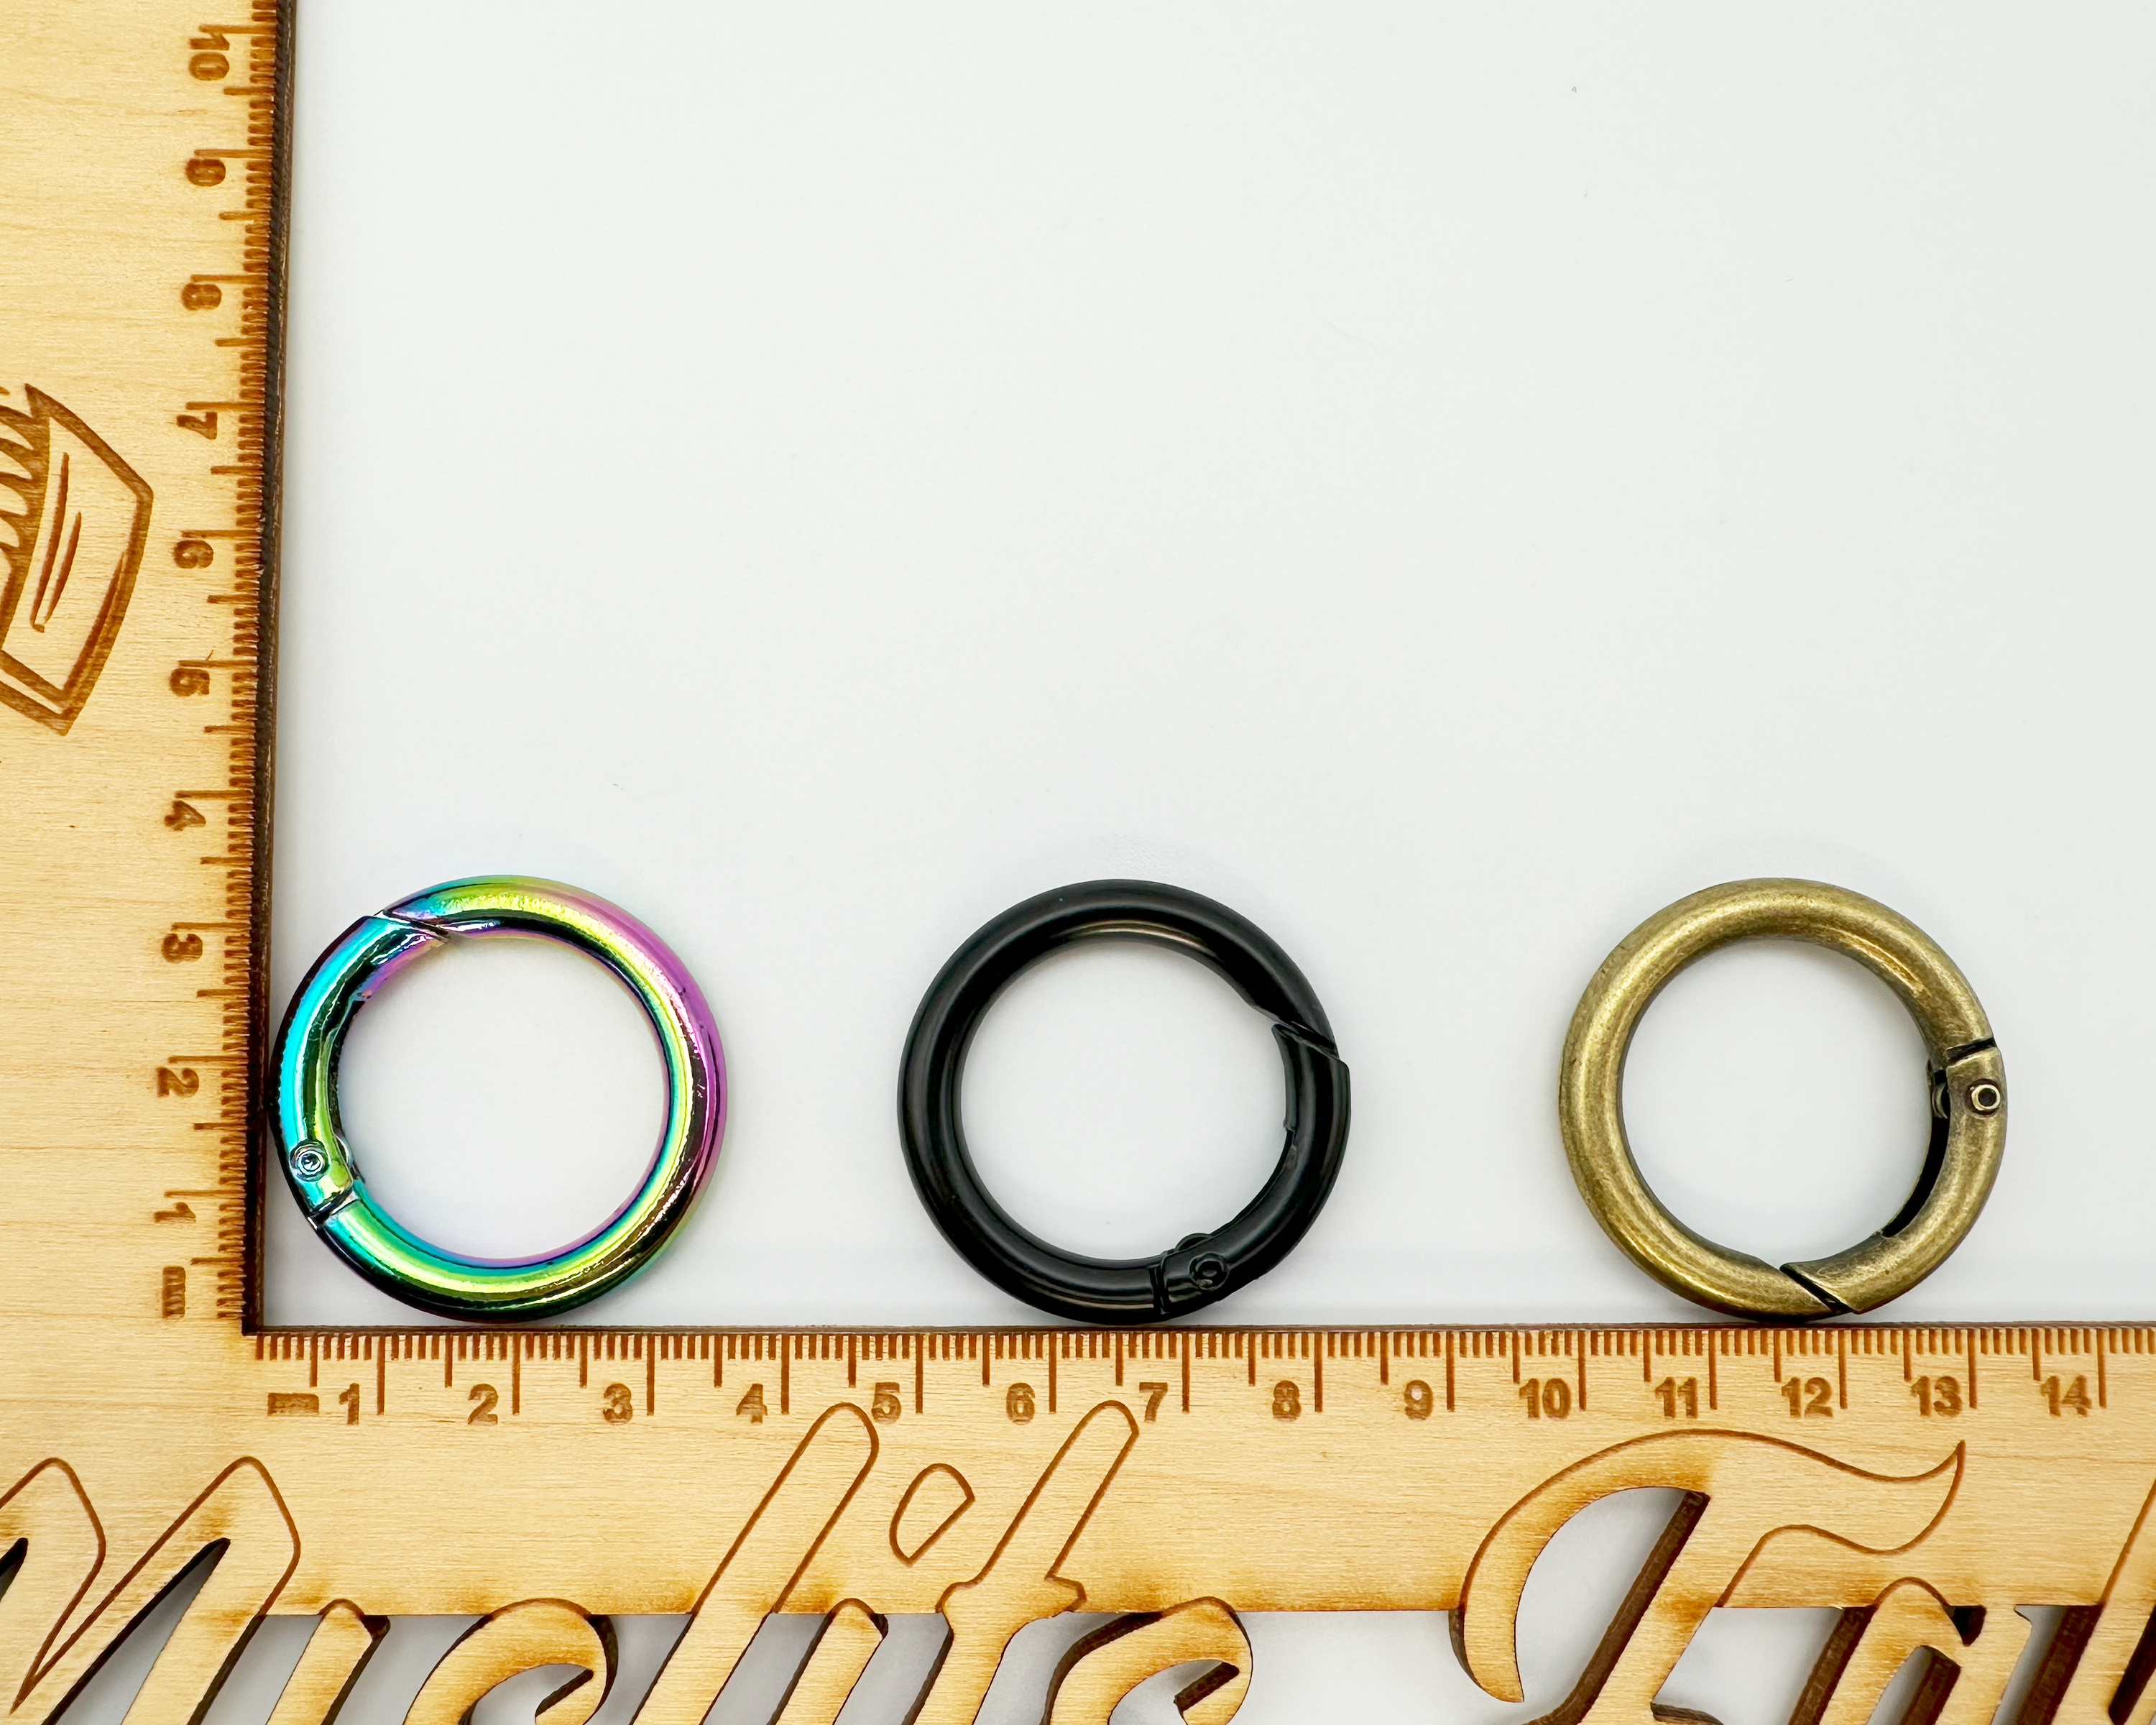 Gate Rings, 33mm Diameter, Spring O Keyring, 2 pack, Metal Bag Making Hardware Supplies